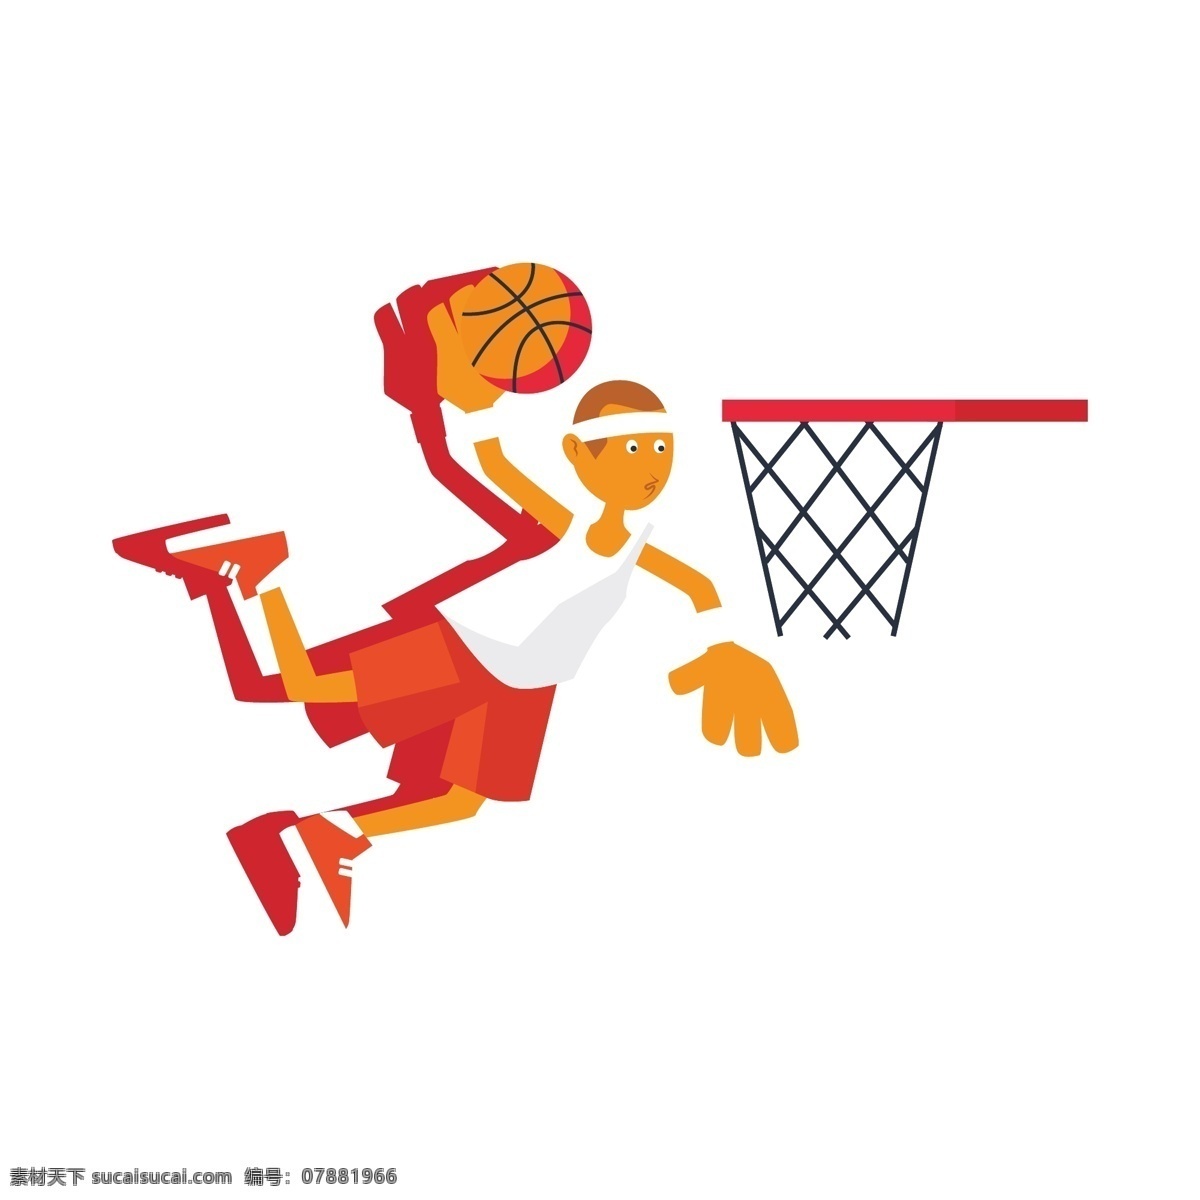 卡通 篮球 运动员 扣 蓝 运动 扣篮 红色 卡通远动员 篮球远动员 扣篮动作 平面